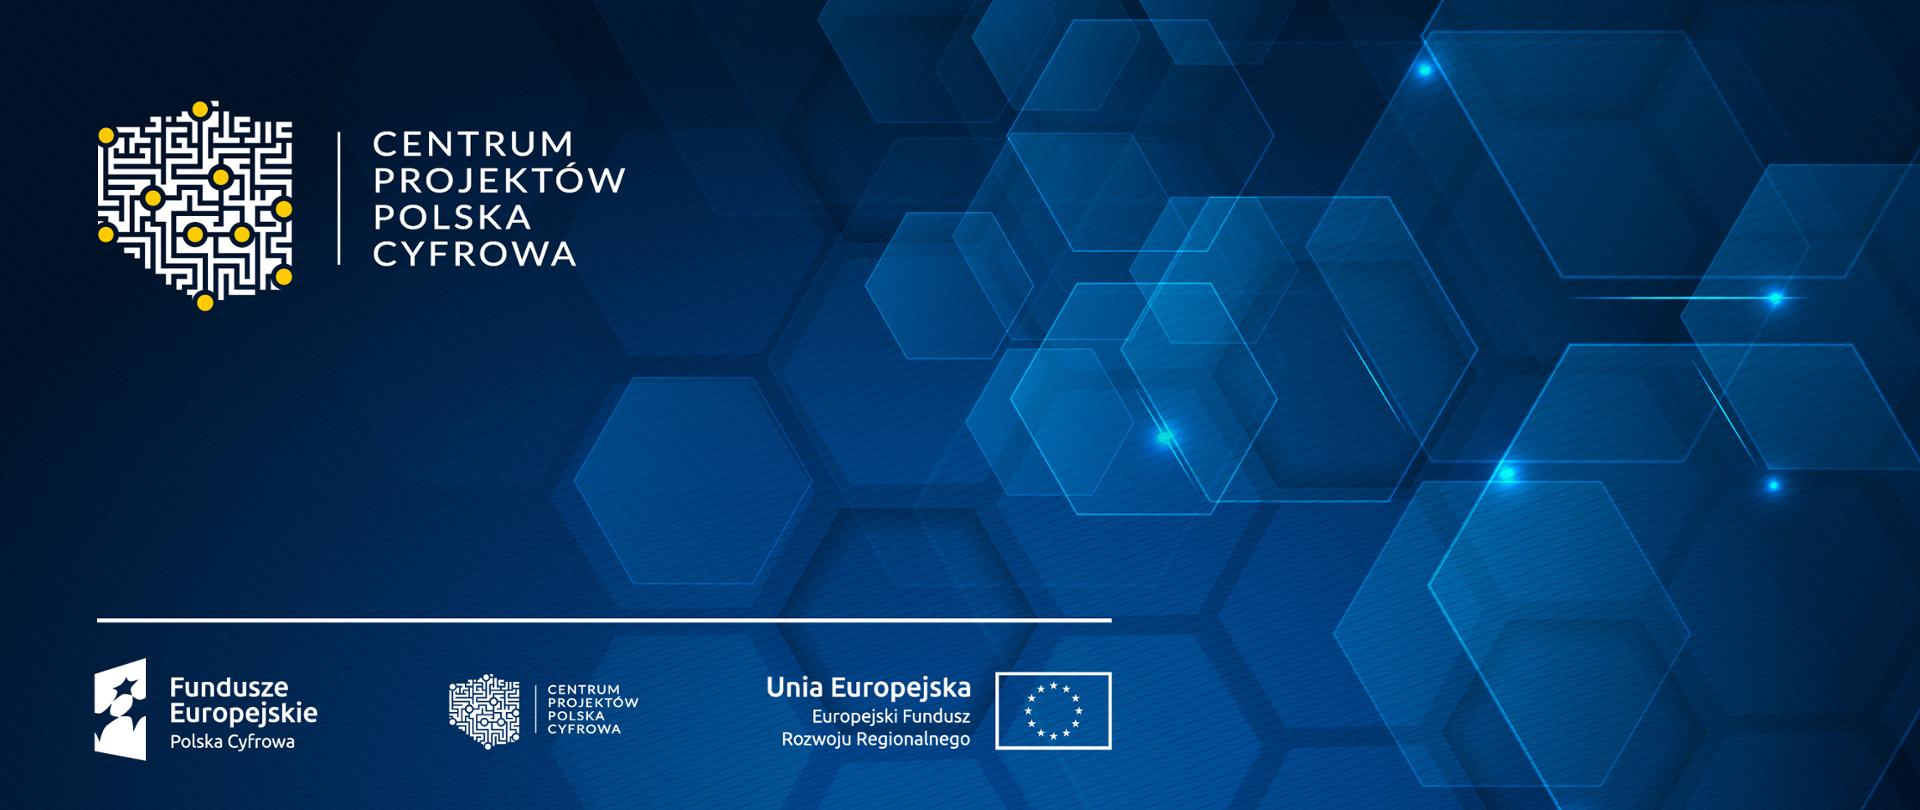 Baner Centrum Projektów Polska Cyfrowa z logociągiem: Fundusze Europejskie, Centrum Projektów Polska Cyfrowa oraz Unia Europejska Europejski Fundusz Rozwoju Regionalnego.